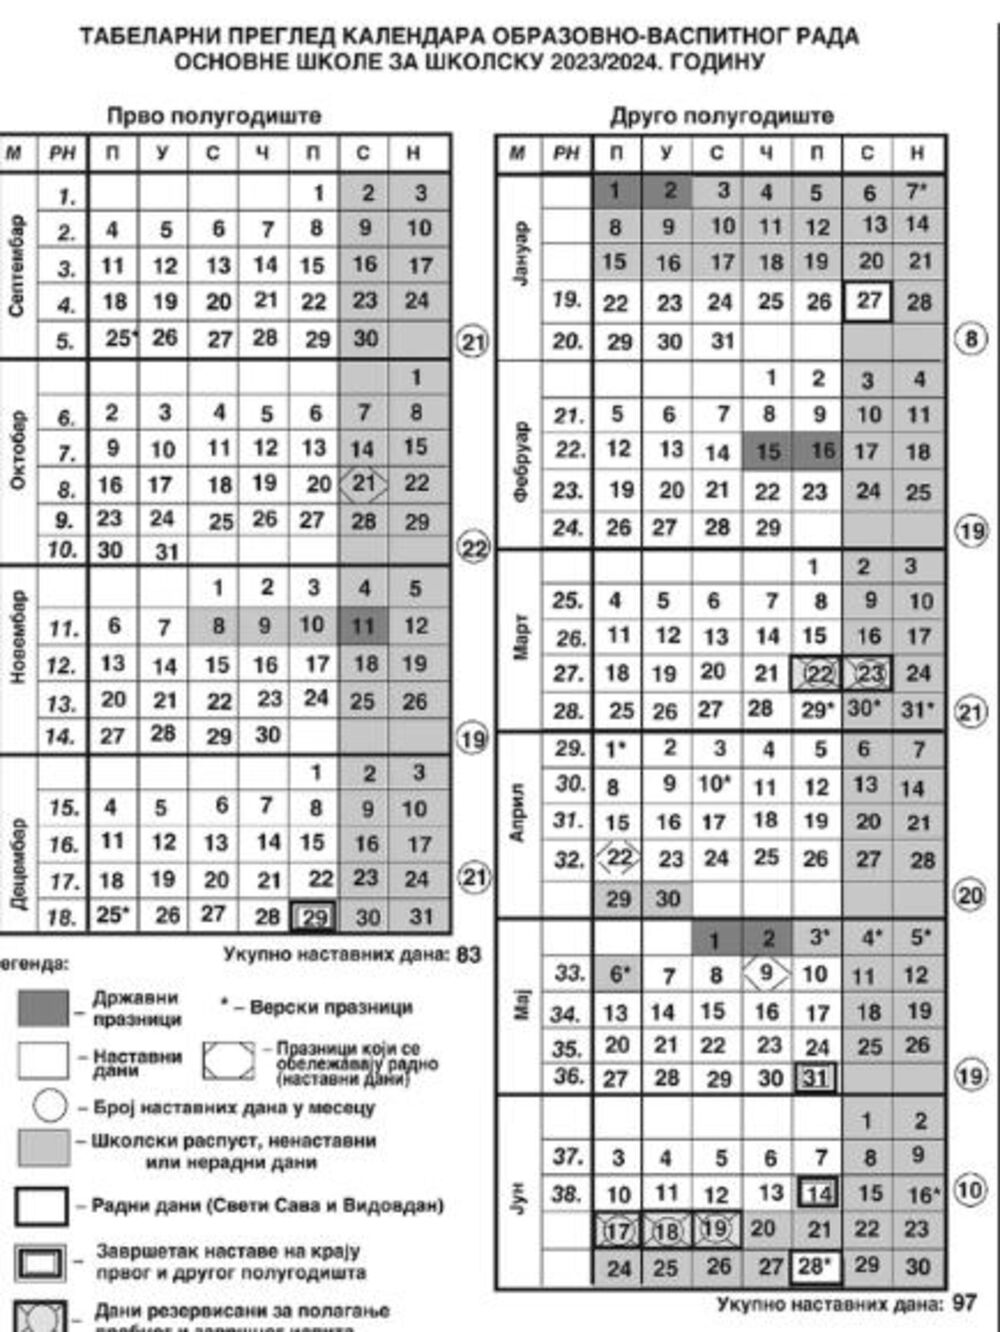 Školski kalendar za srednju školu za školsku 2023/24. godinu